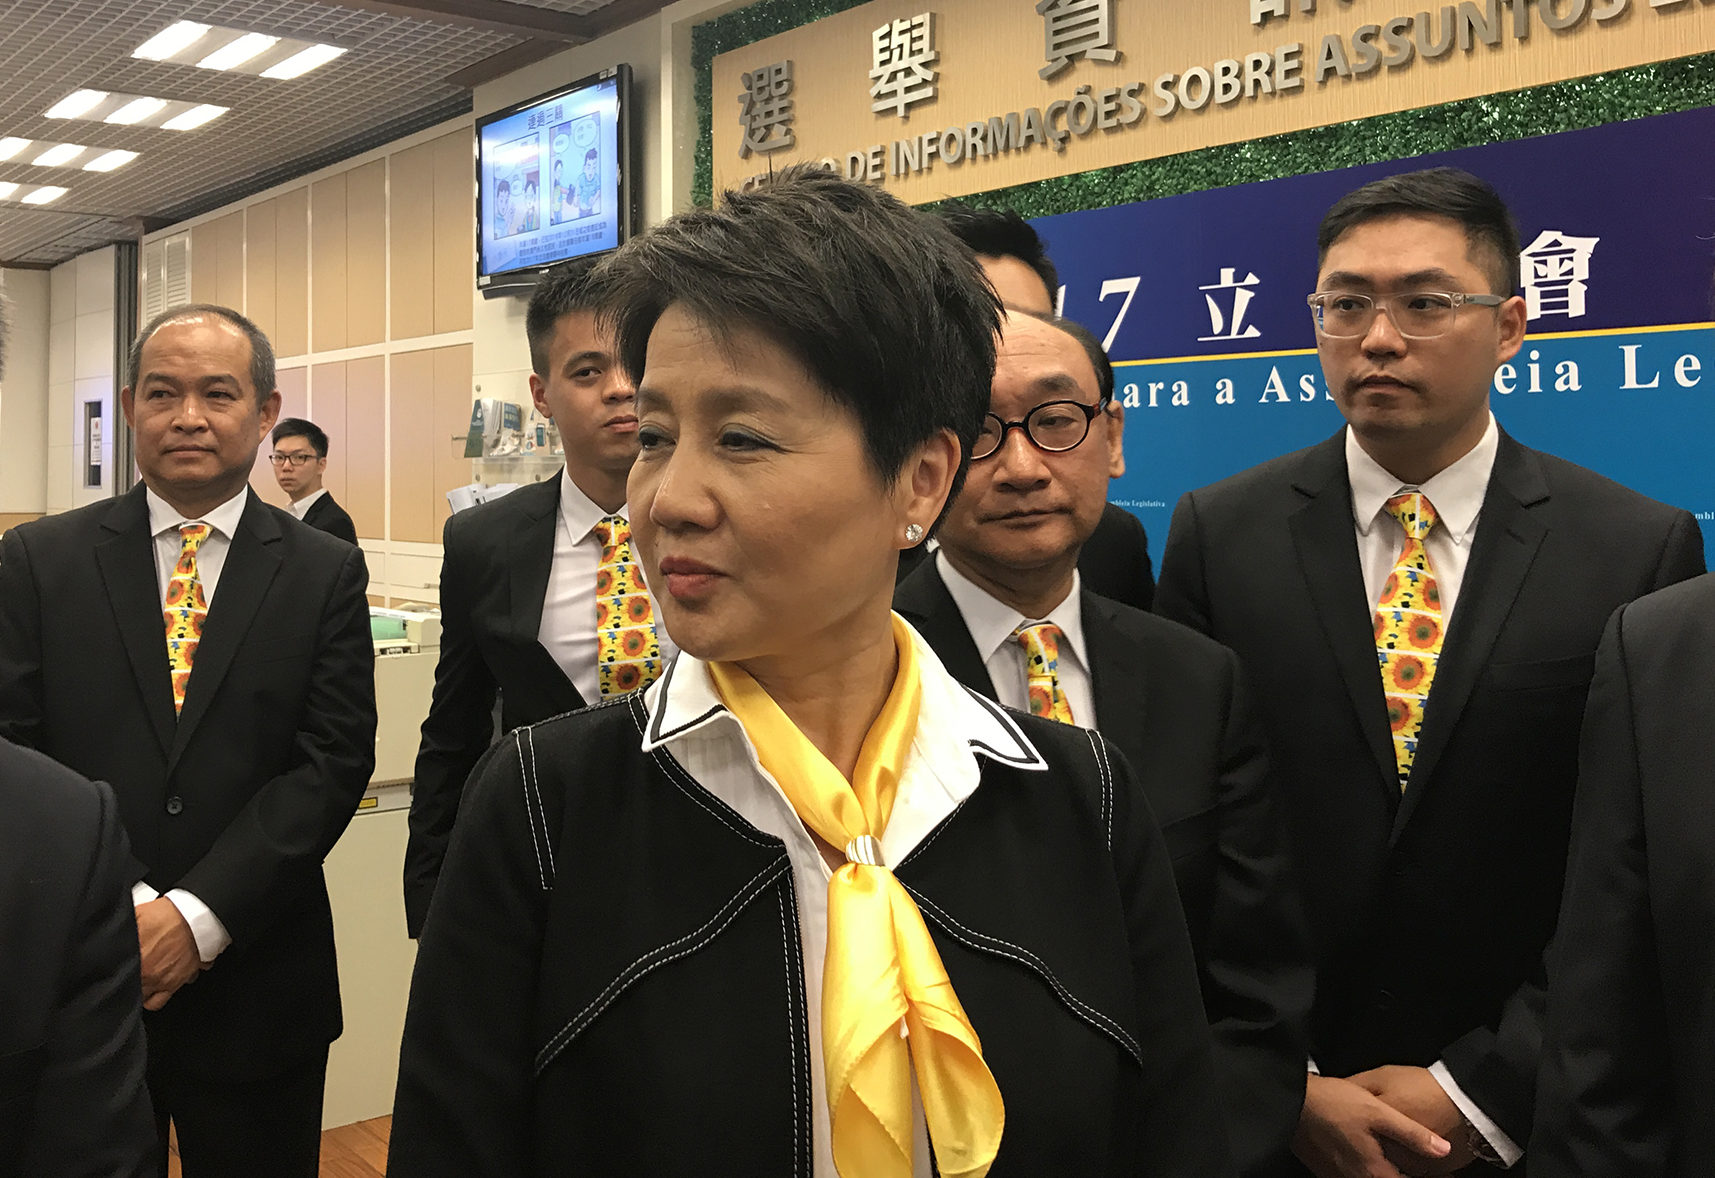 Eleições | Angela Leong defende programa de arrendamento jovem